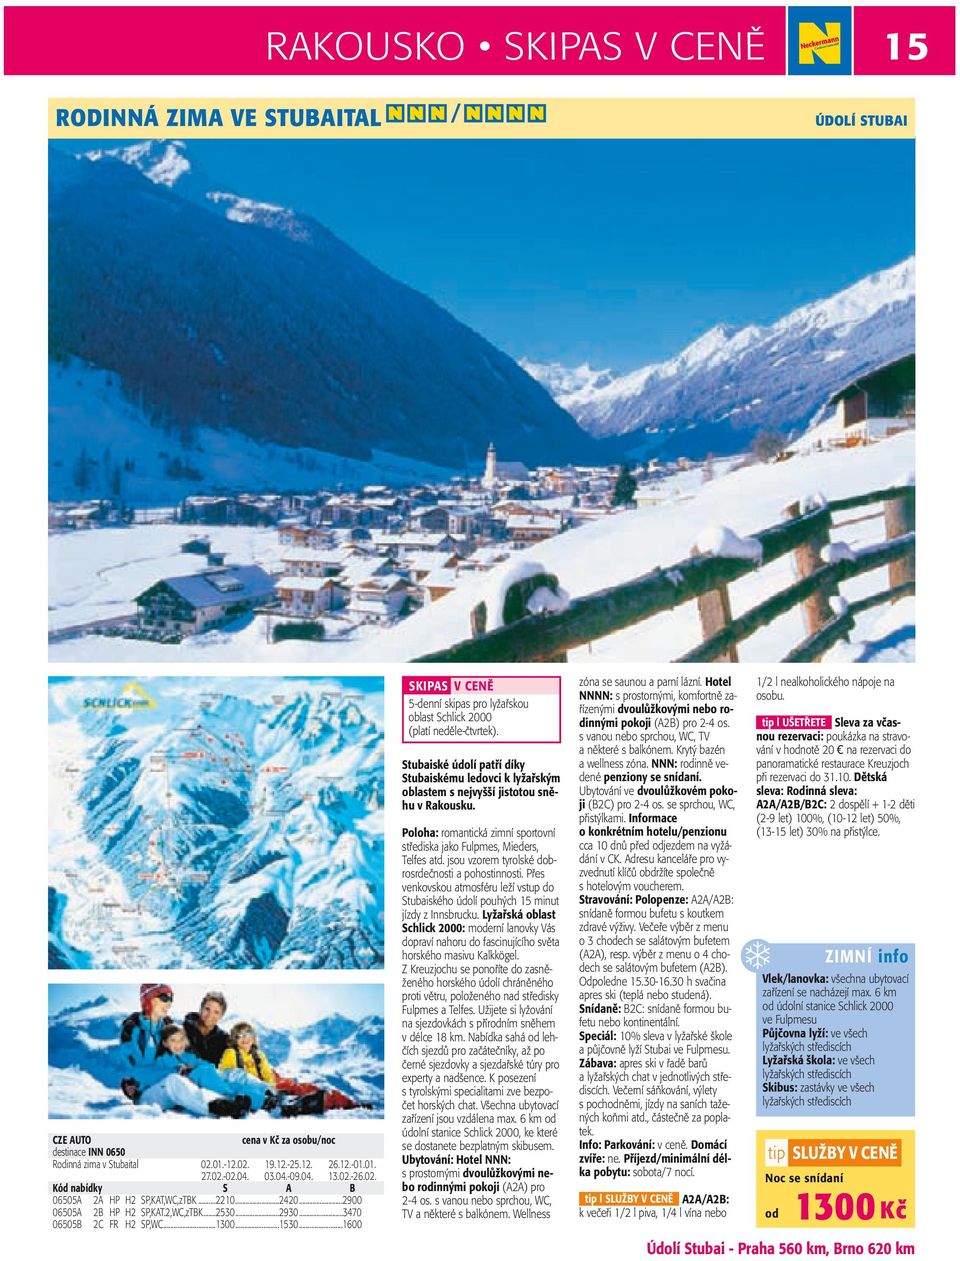 ..1600 SKIPAS V CENĚ 5-denní skipas pro lyžařskou oblast Schlick 2000 (platí neděle-čtvrtek). Stubaiské údolí patří díky Stubaiskému ledovci k lyžařským oblastem s nejvyšší jistotou sněhu v Rakousku.